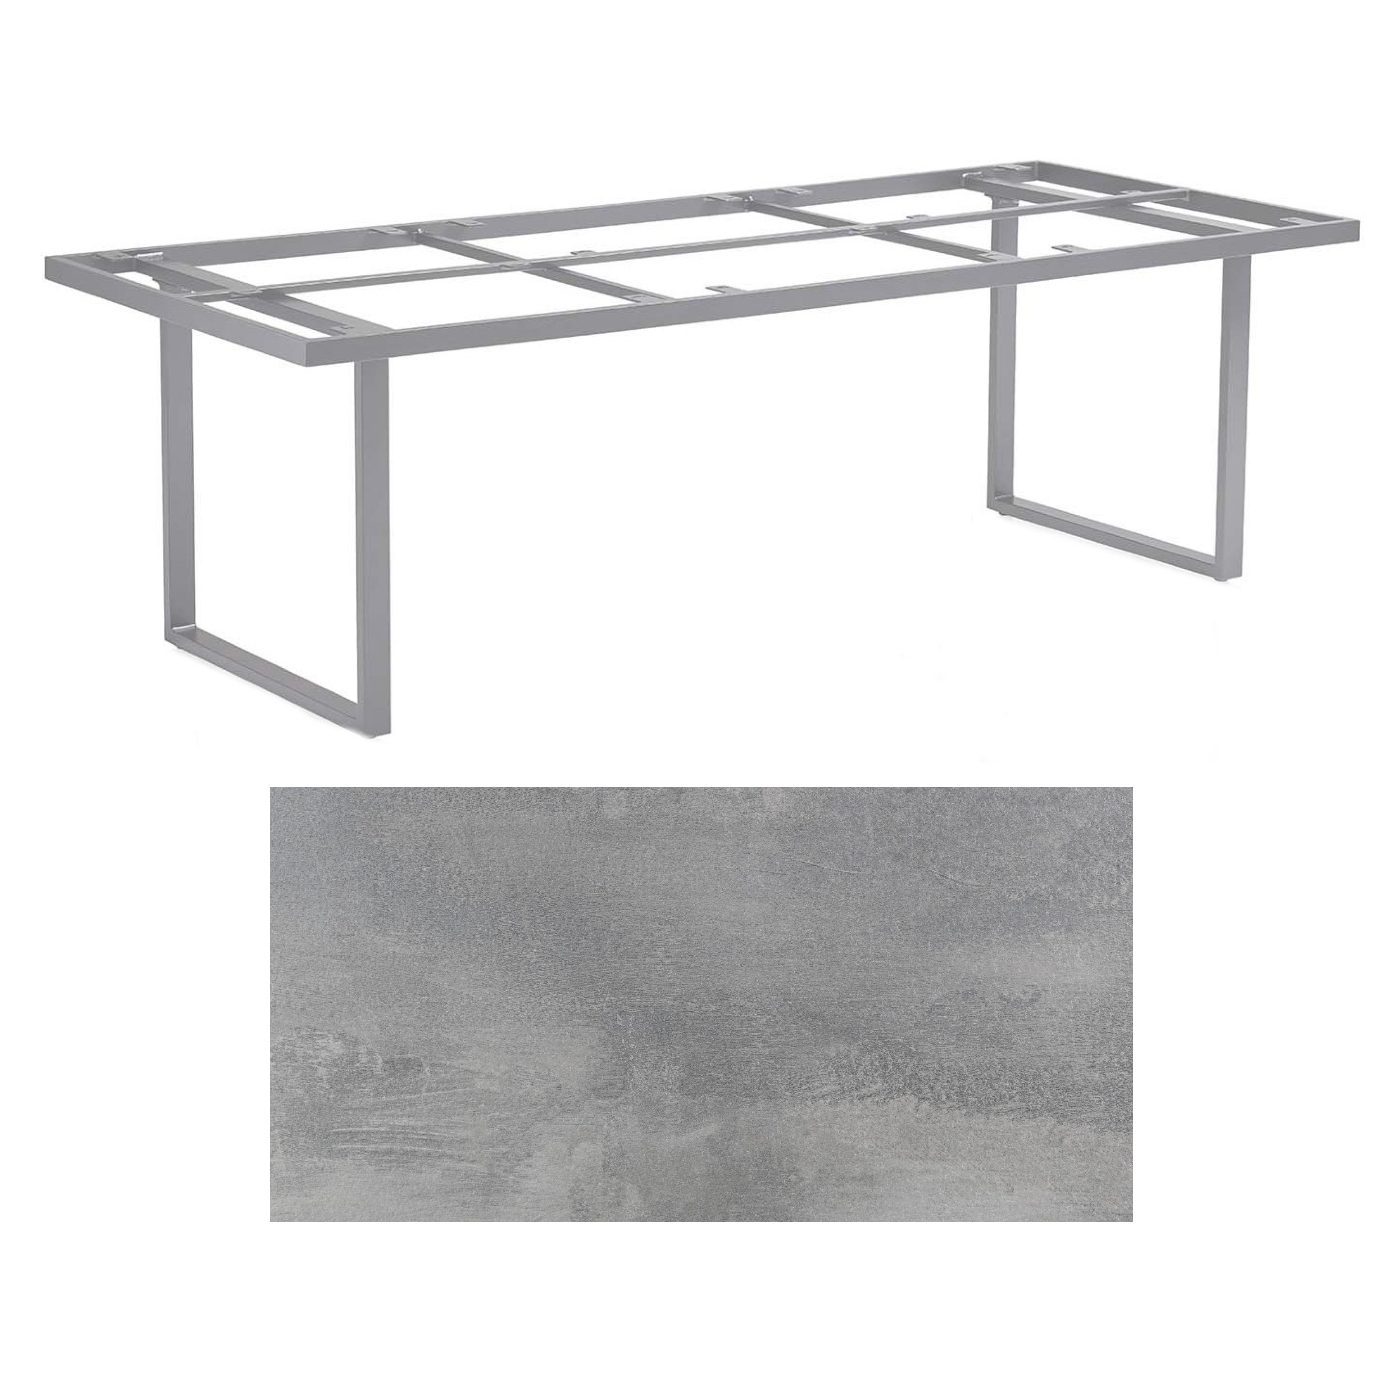 Kettler "Skate" Gartentisch Casual Dining, Gestell Aluminium silber, Tischplatte HPL silber-grau, 220x95 cm, Höhe ca. 68 cm